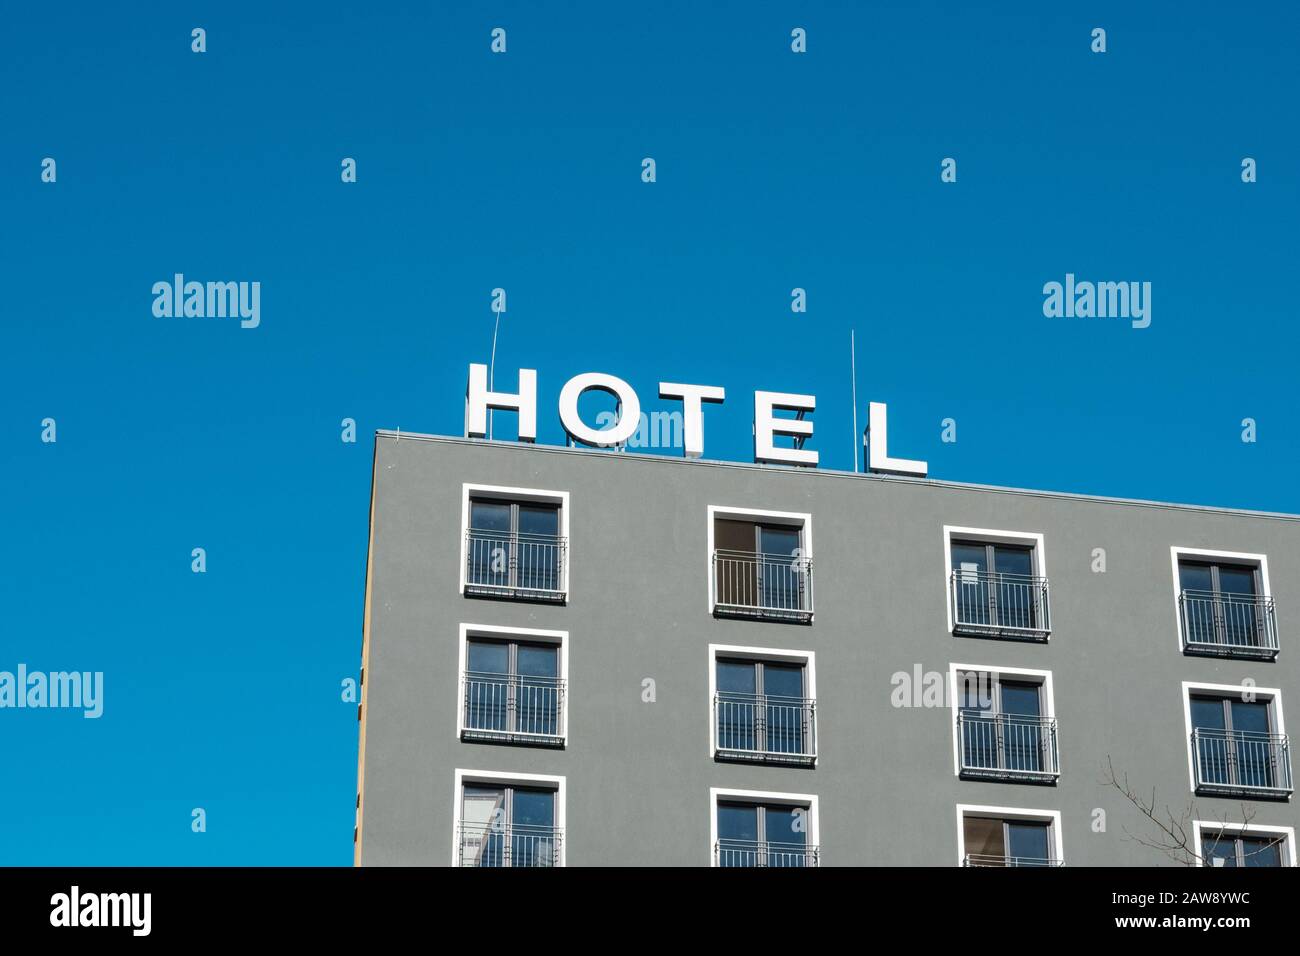 Hotelschild am Hotelgebäude - Hotelschild am Hotelgebäude Stockfoto